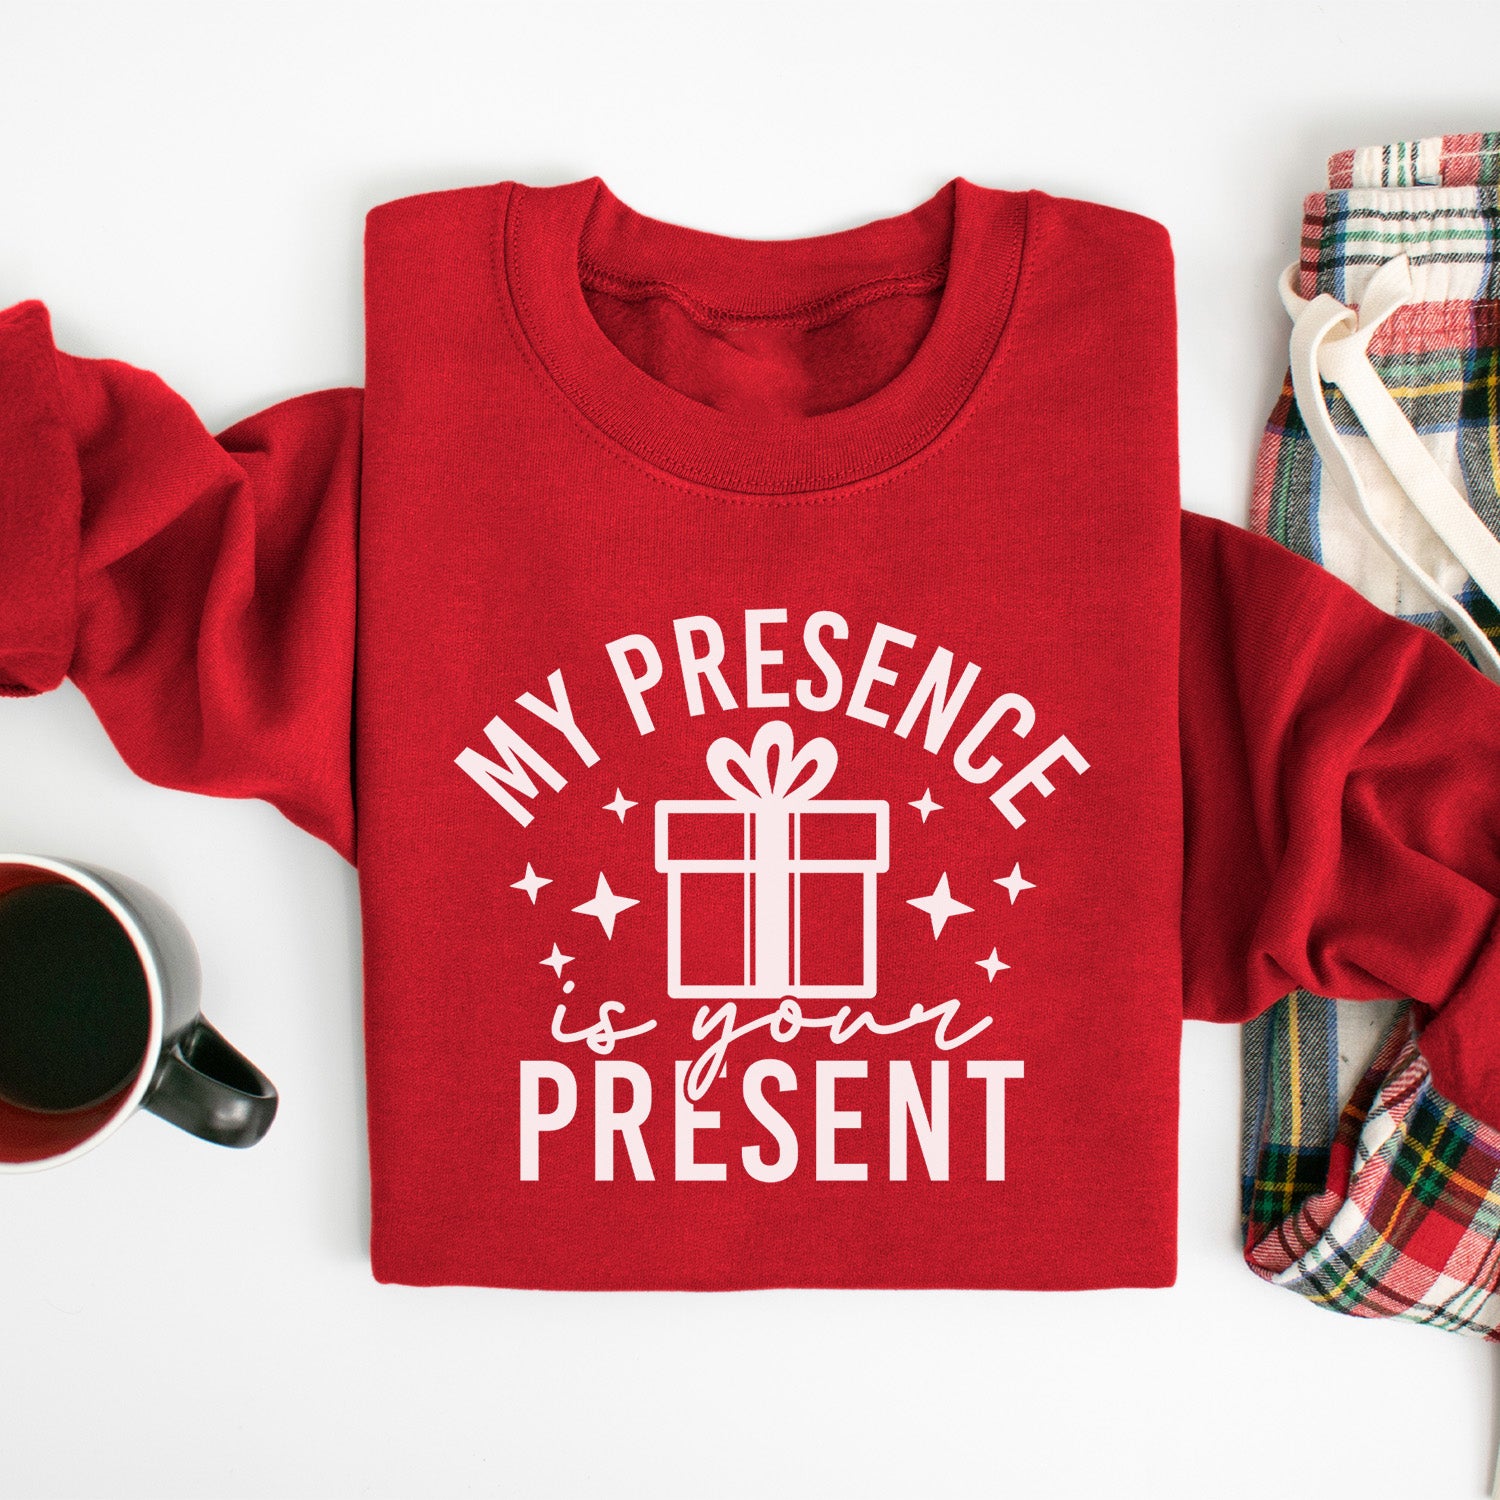 My Presence Is Your Present Sweatshirt - Funny Christmas Sweatshirt - Sizes S to 5XL